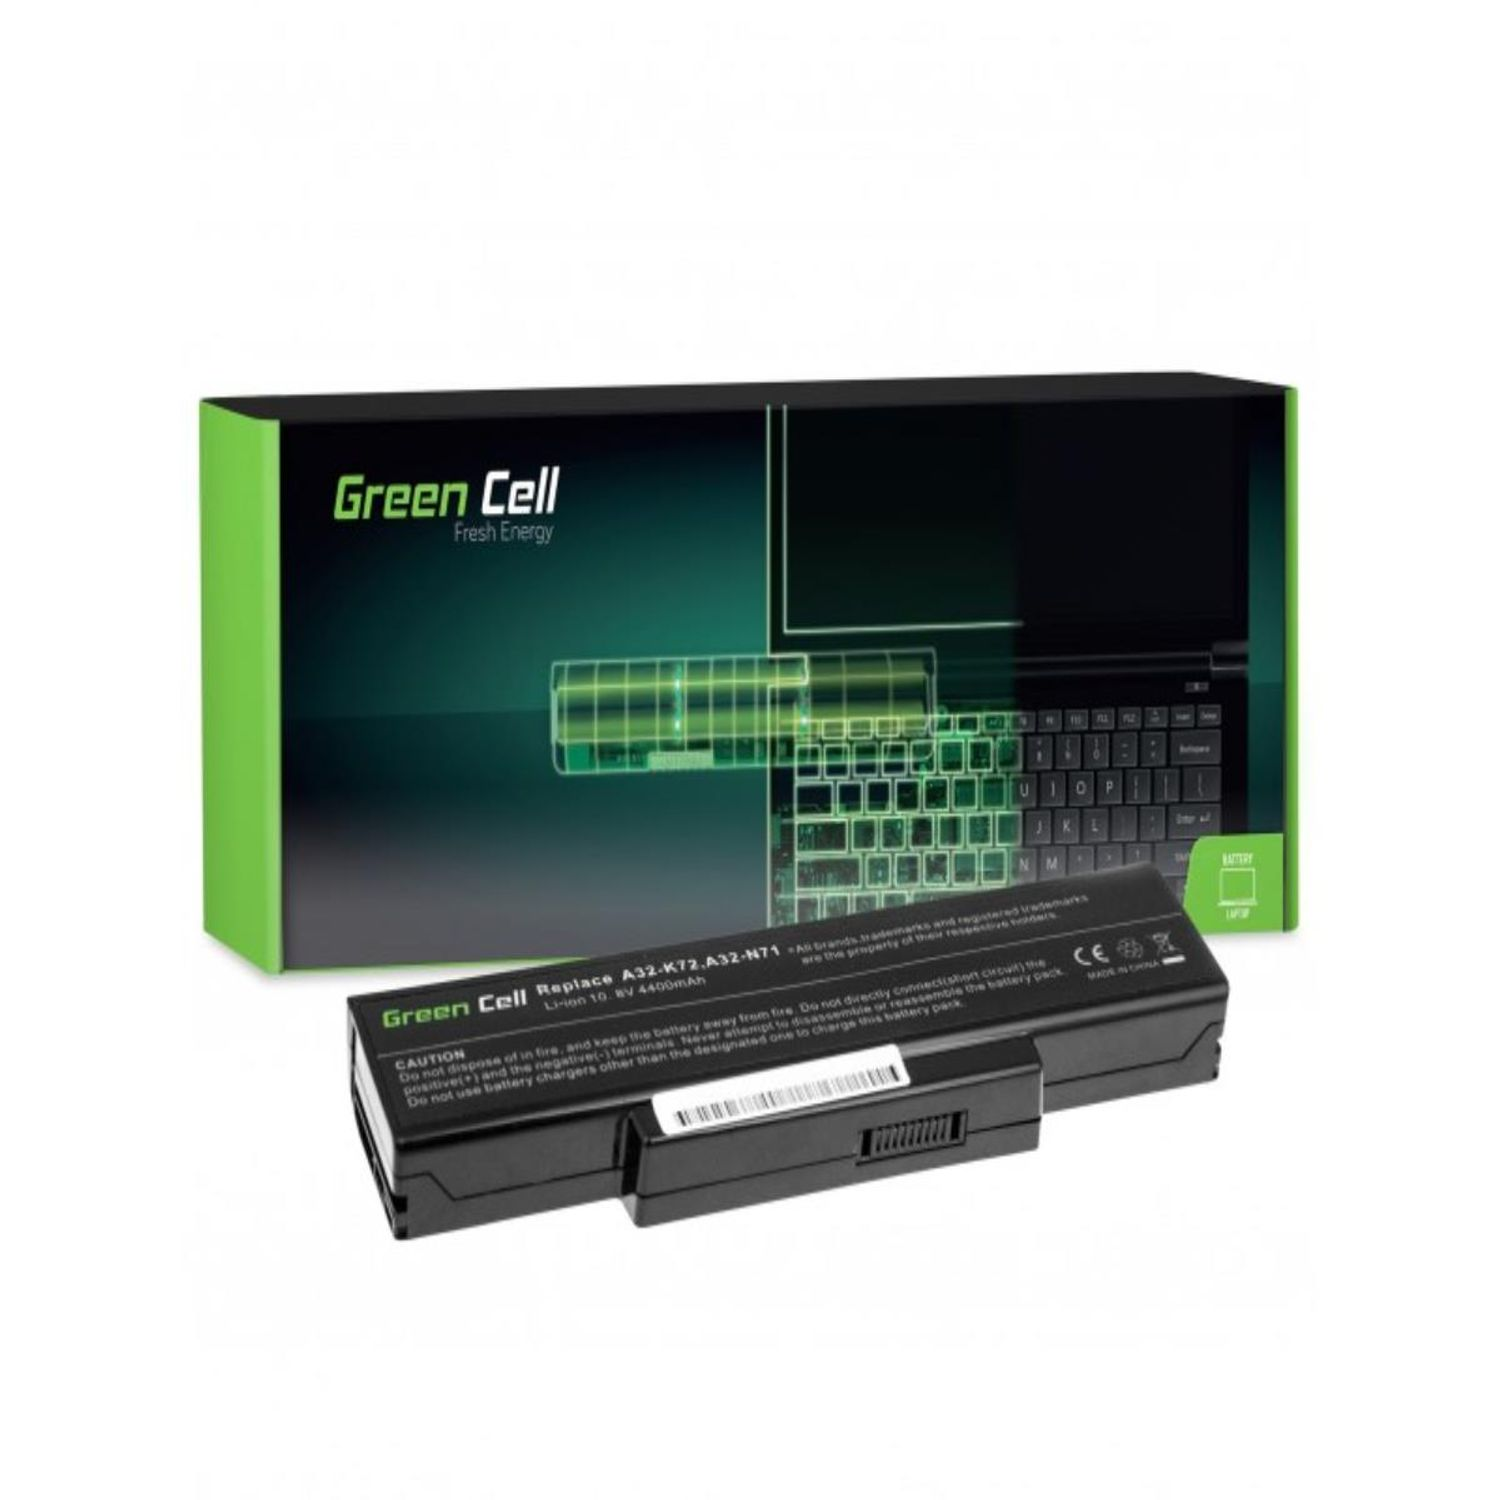 GREEN CELL Laptop Batterien Akku Akku Lithium-Ionen-Akku für A32-K72 K72 Asus / N71